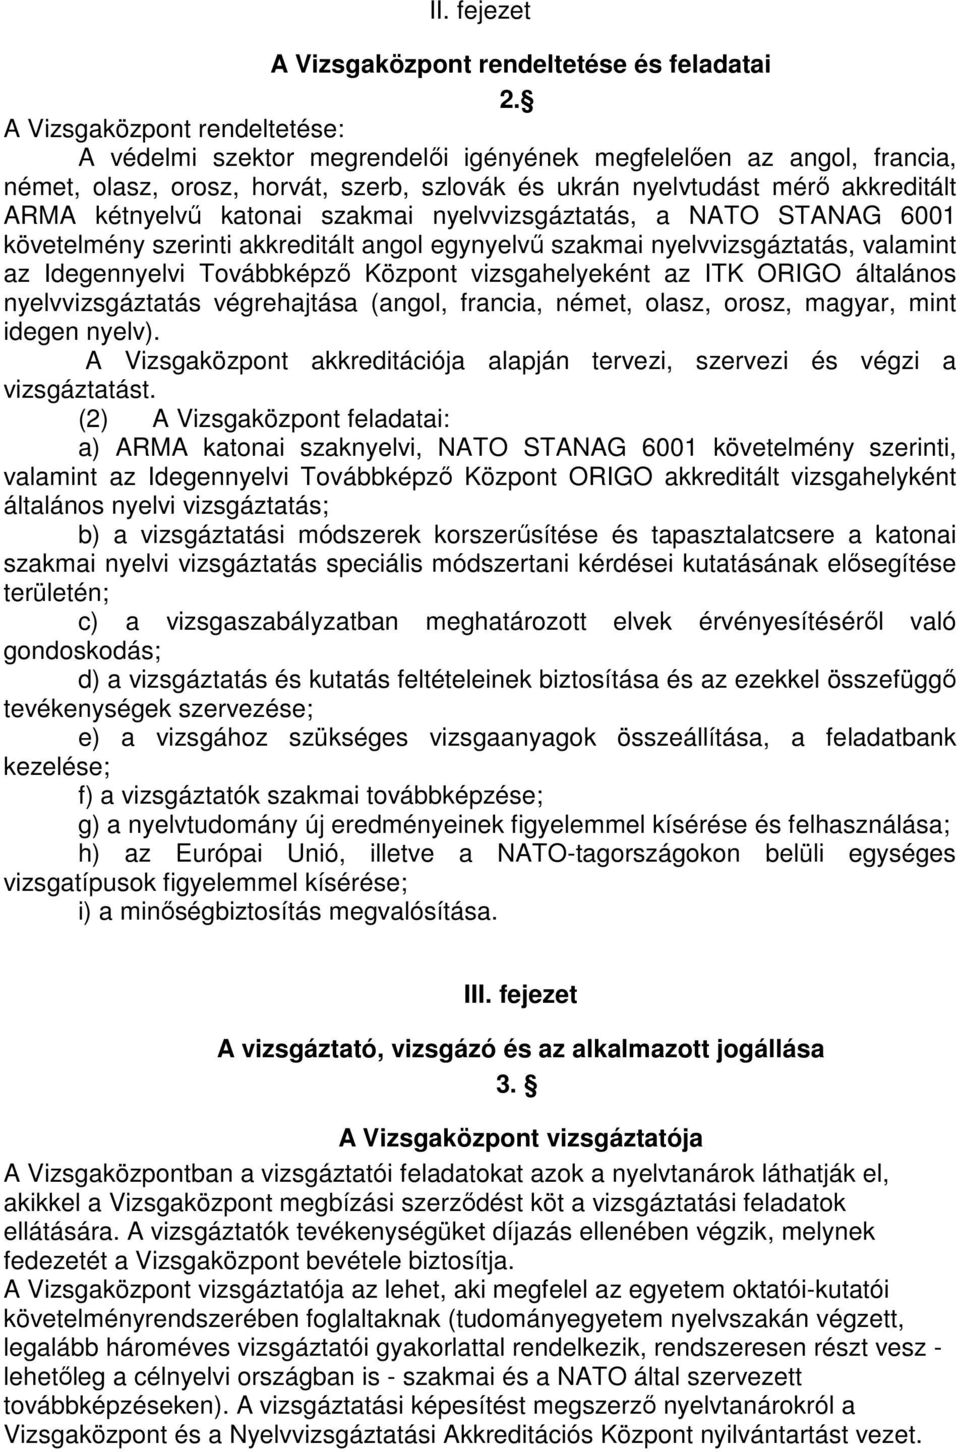 katonai szakmai nyelvvizsgáztatás, a NATO STANAG 6001 követelmény szerinti akkreditált angol egynyelvű szakmai nyelvvizsgáztatás, valamint az Idegennyelvi Továbbképző Központ vizsgahelyeként az ITK